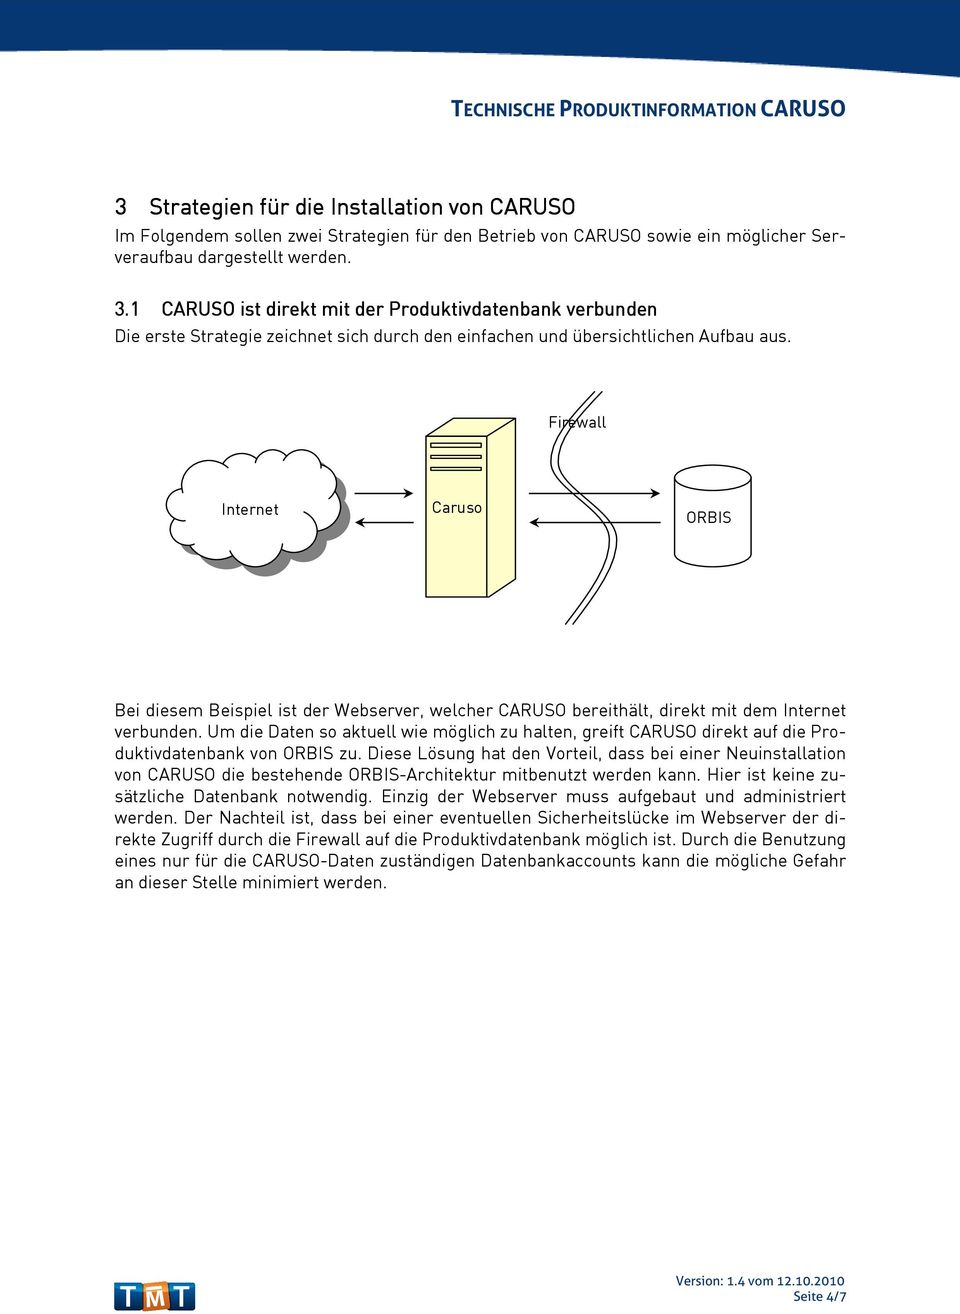 Firewall Internet ORBIS Bei diesem Beispiel ist der Webserver, welcher CARUSO bereithält, direkt mit dem Internet verbunden.